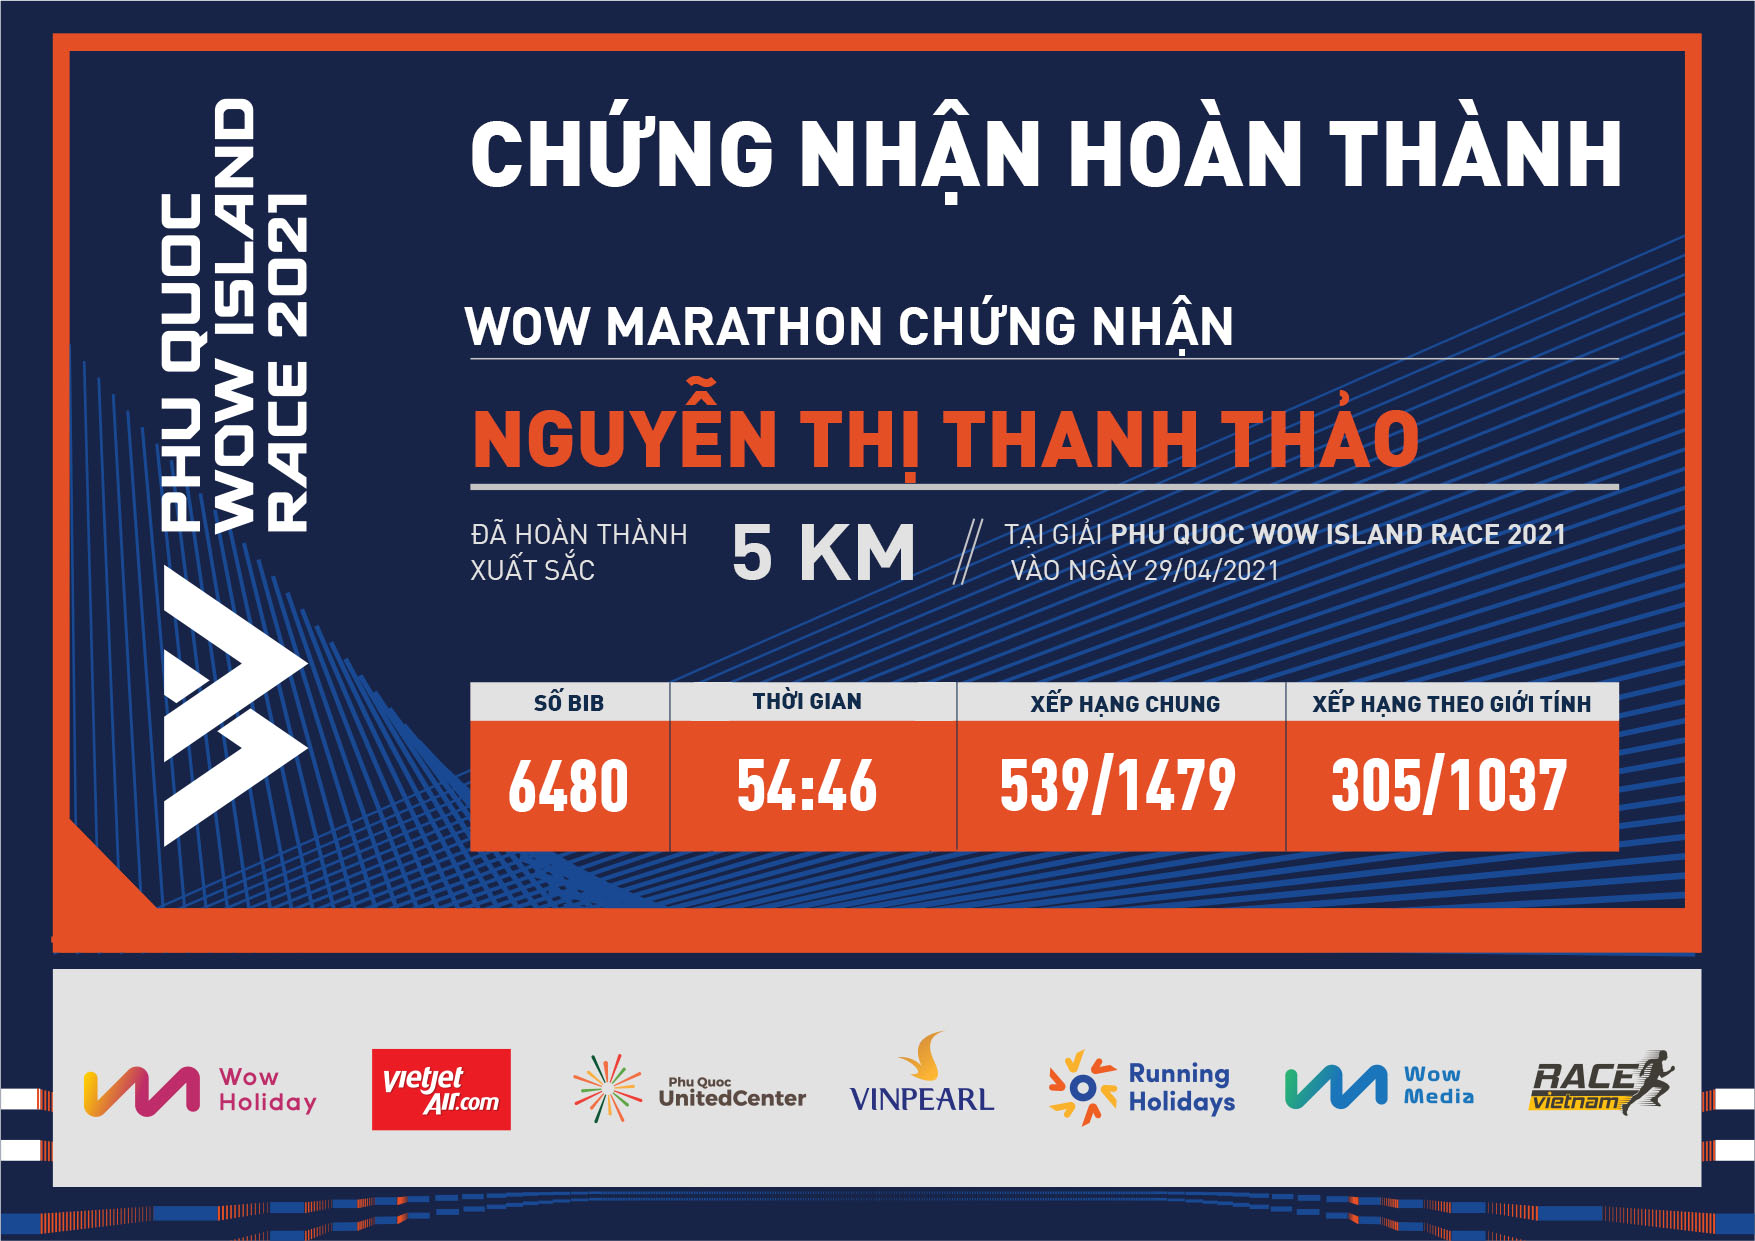 6480 - Nguyễn Thị Thanh Thảo